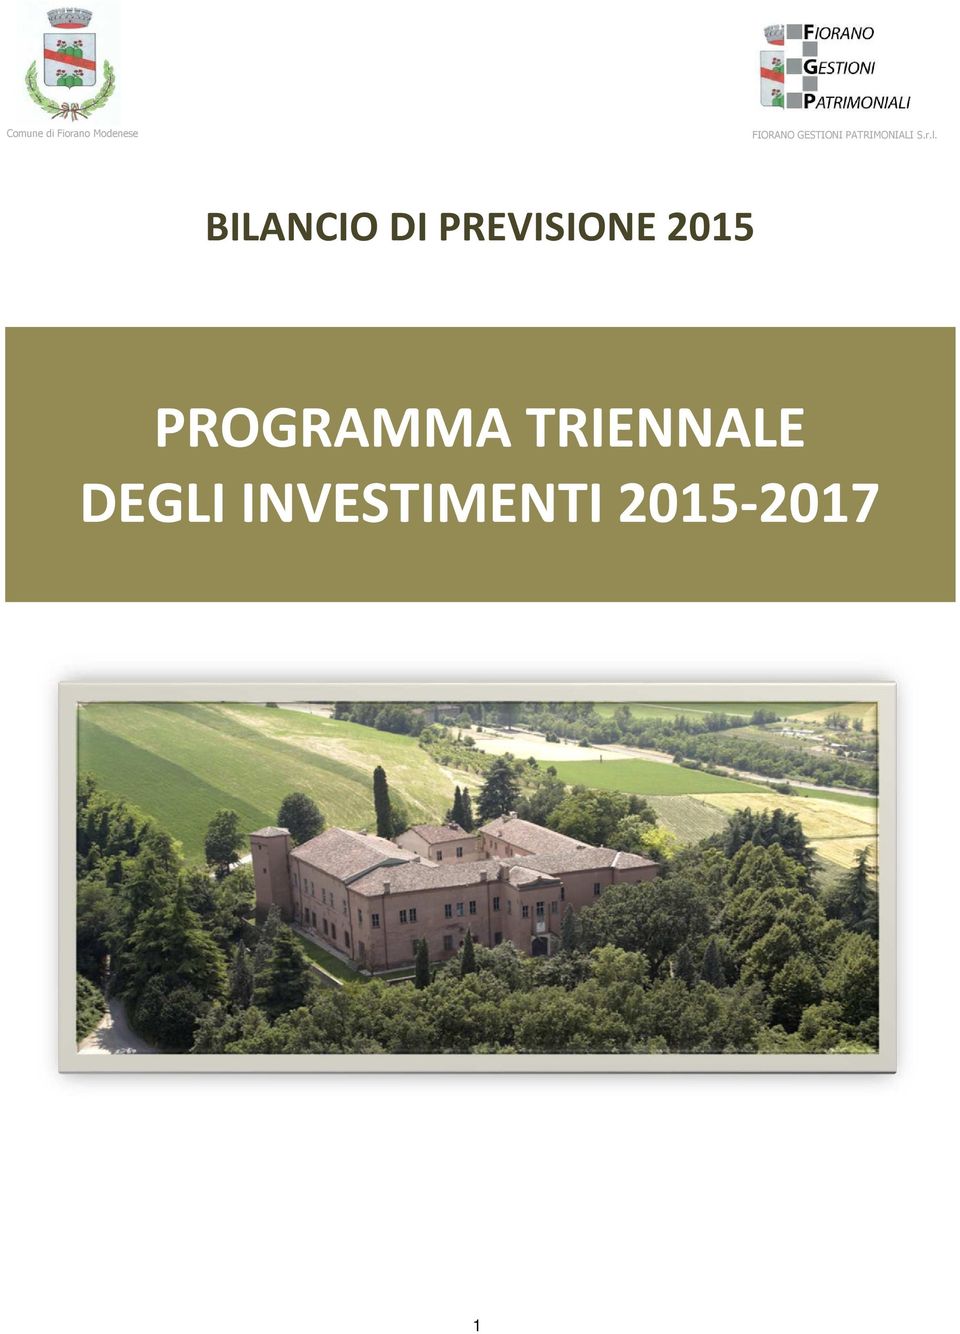 BILANCIO DI PREVISIONE 2015